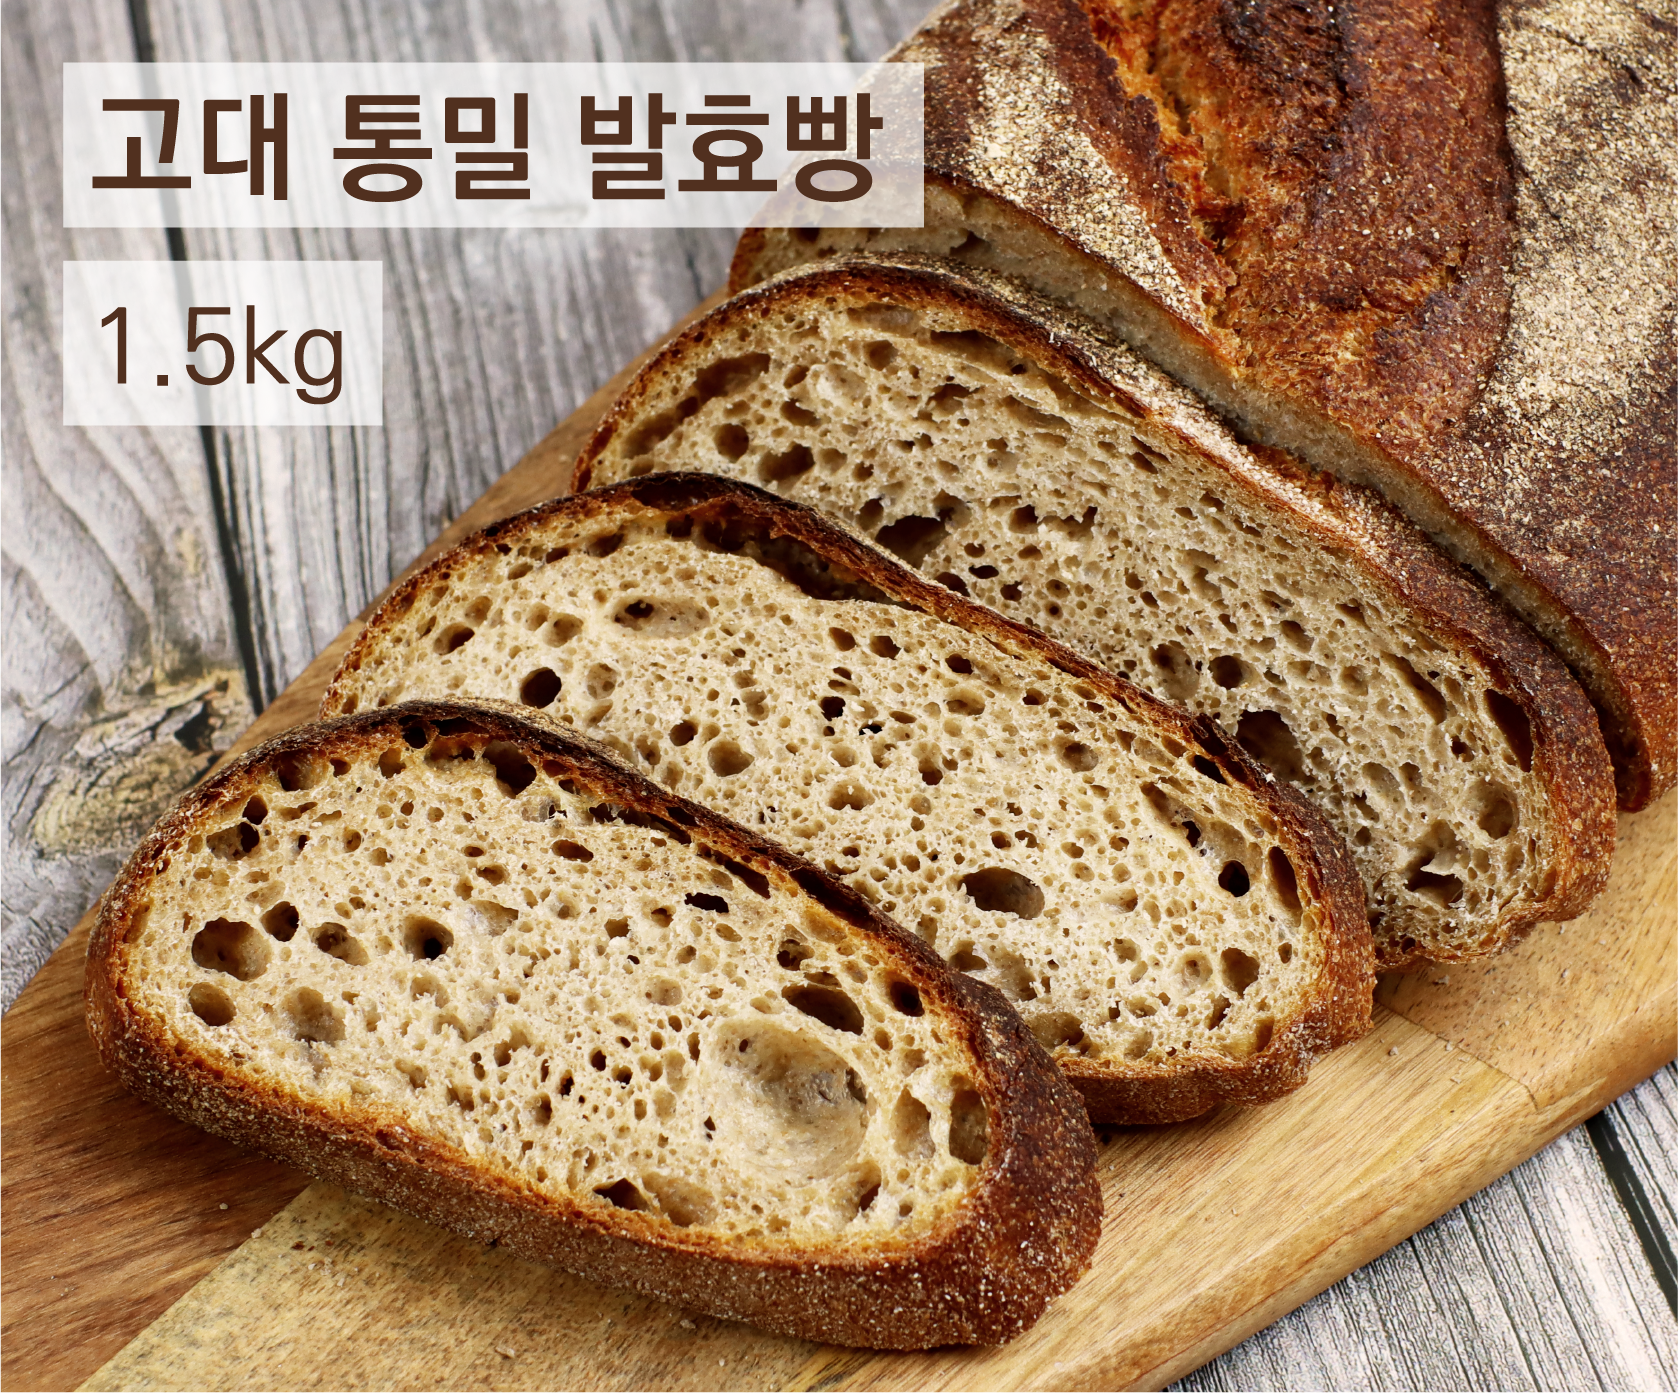 에그앤씨드 천연 통밀/고대밀 발효빵 100% 통밀빵